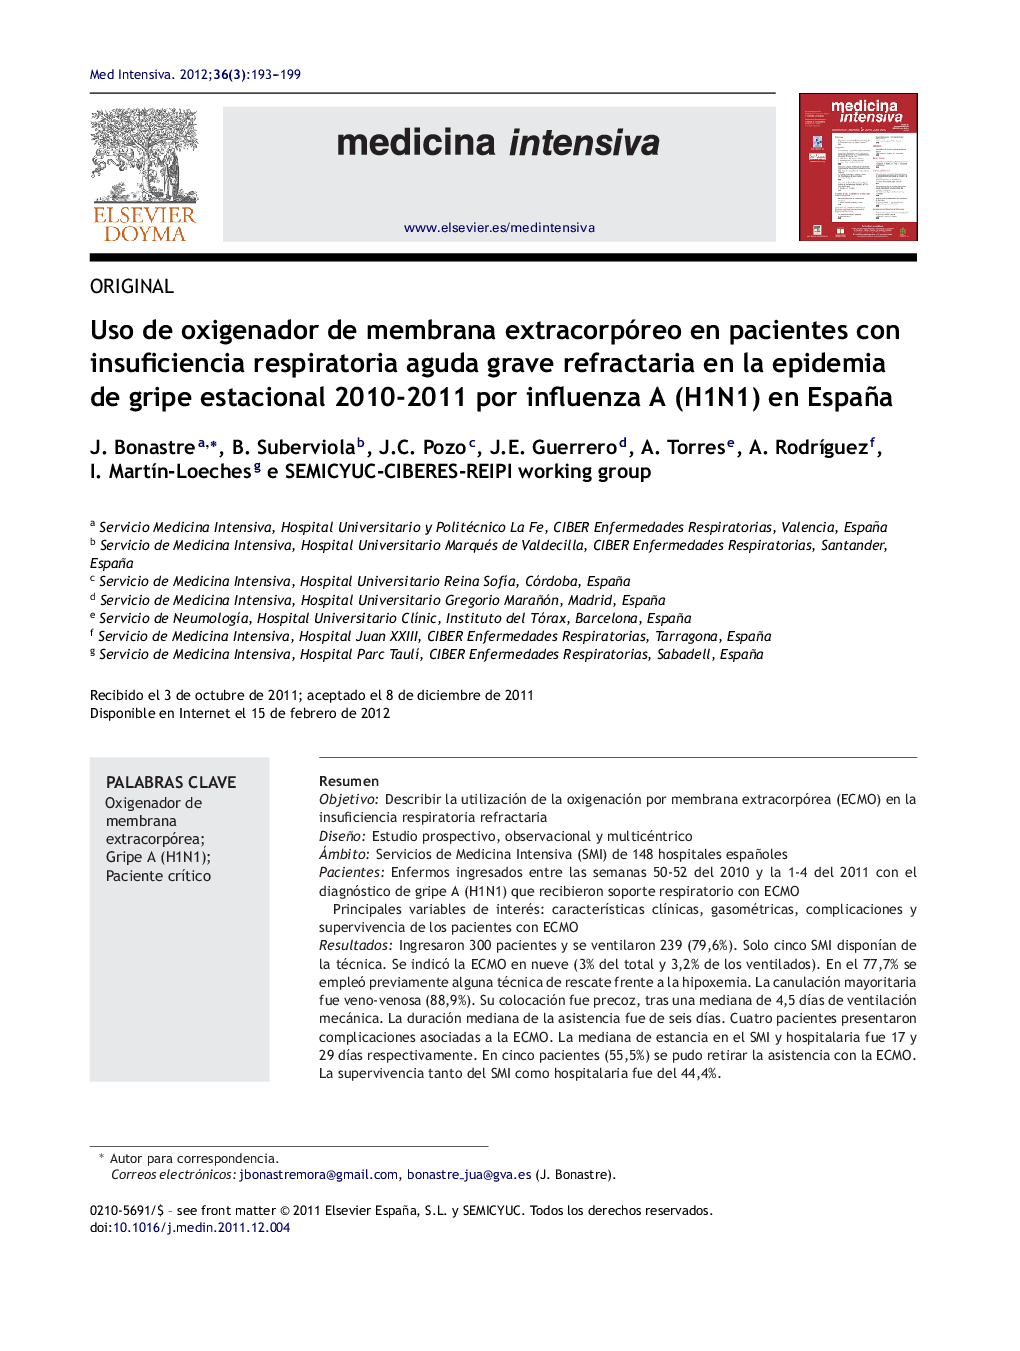 Uso de oxigenador de membrana extracorpóreo en pacientes con insuficiencia respiratoria aguda grave refractaria en la epidemia de gripe estacional 2010-2011 por influenza A (H1N1) en España